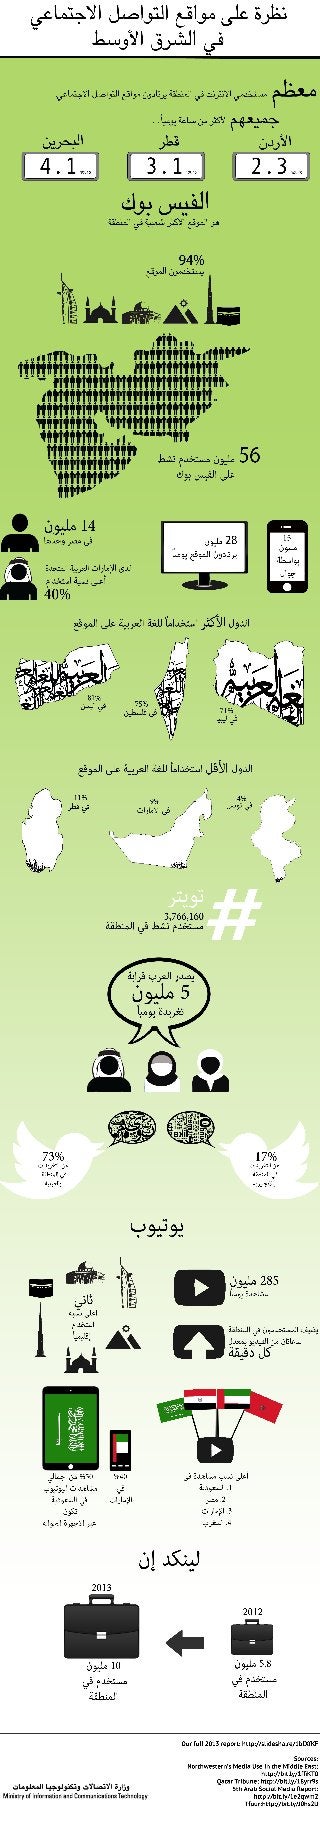 نظرة على مواقع التواصل الإجتماعي في الشرق الأوسط